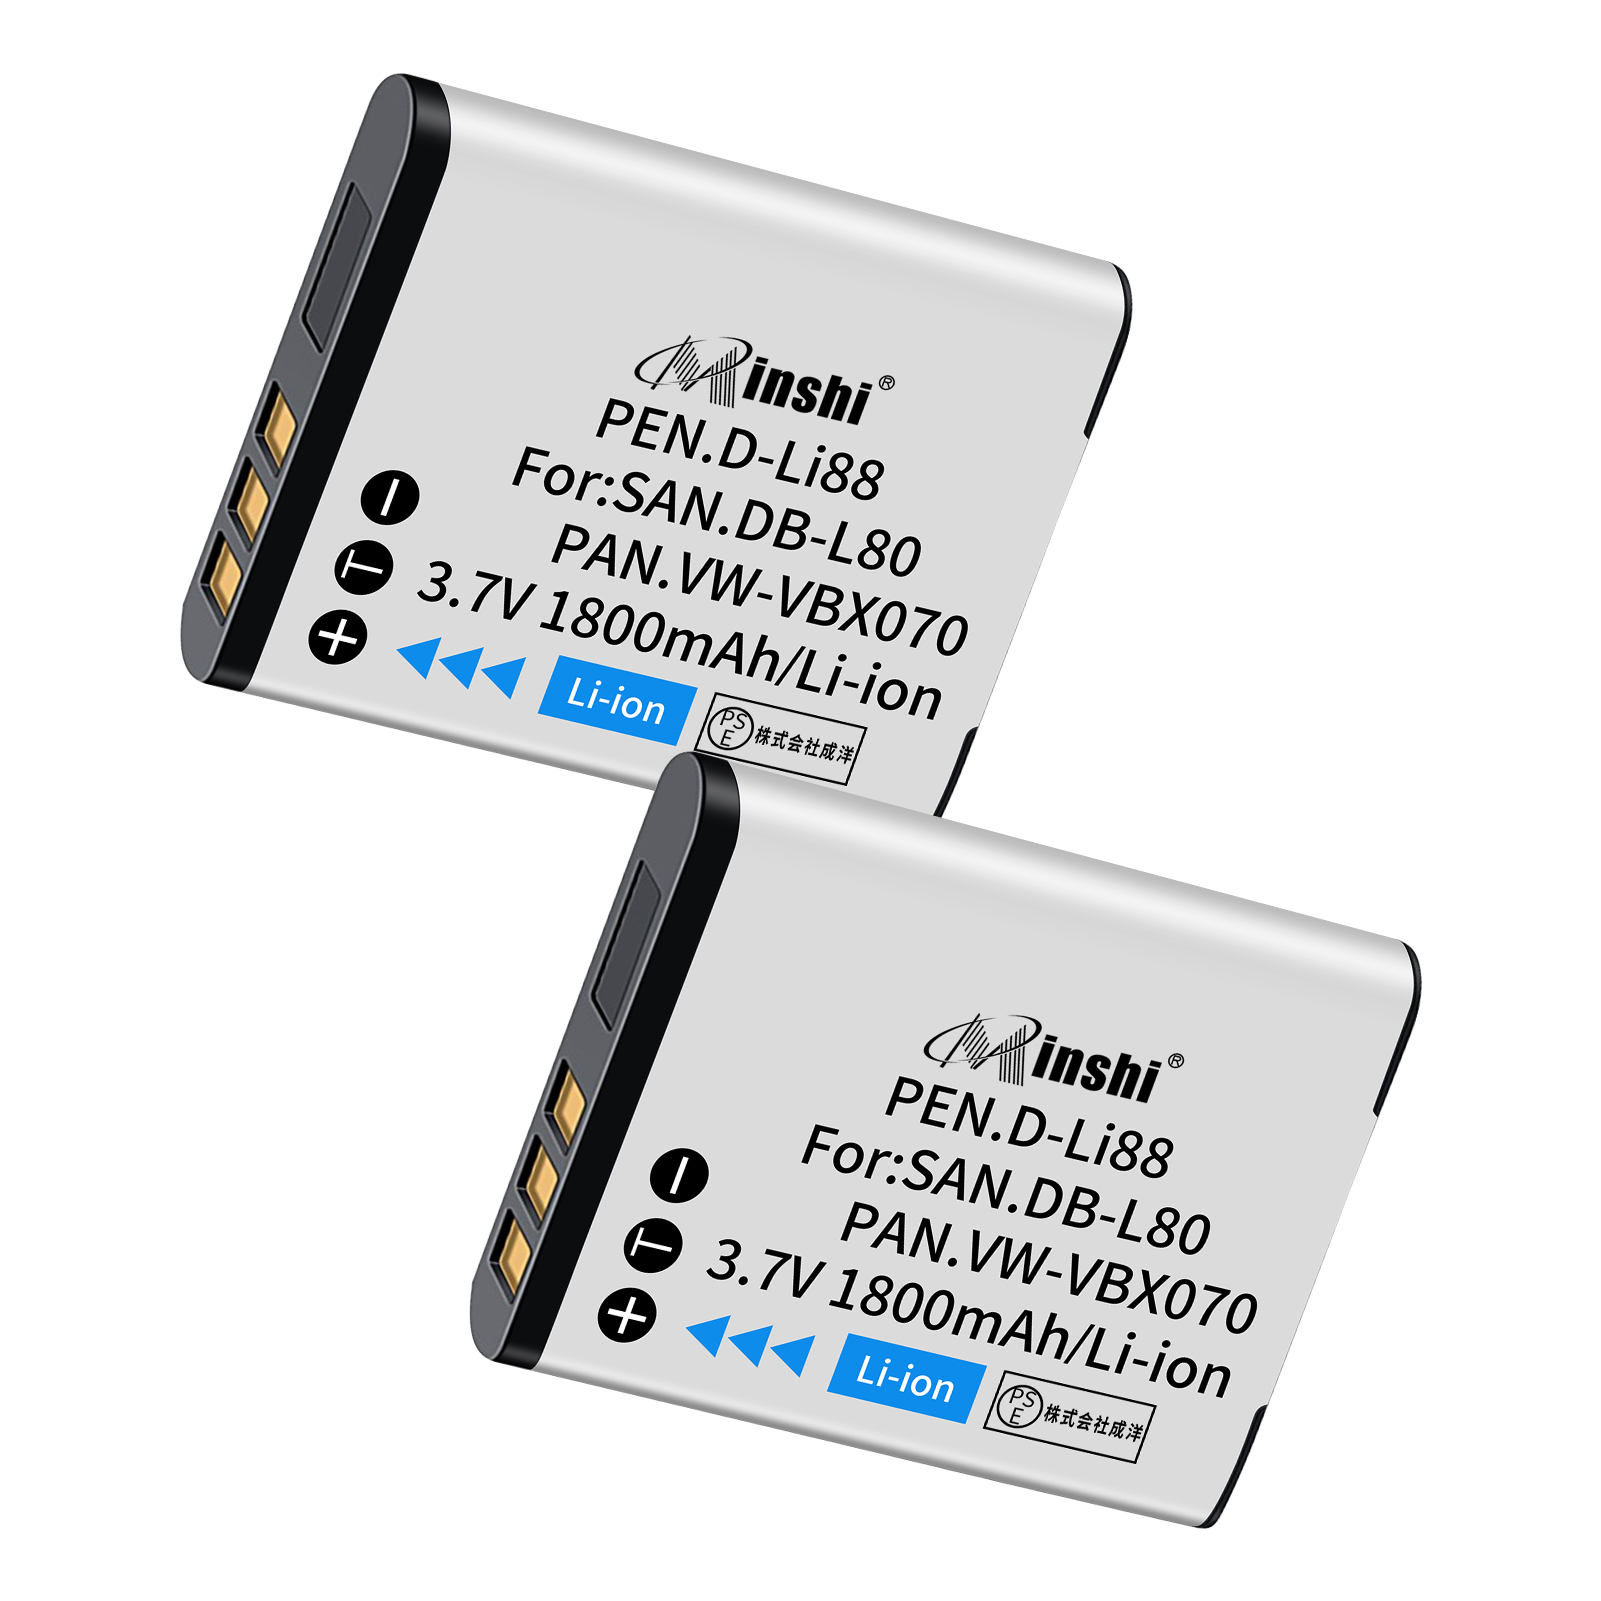 【２個セット】minshi Camileo SX900【1800mAh 3.7V】PSE認定済 高品質VW-VBX070互換バッテリーWHG